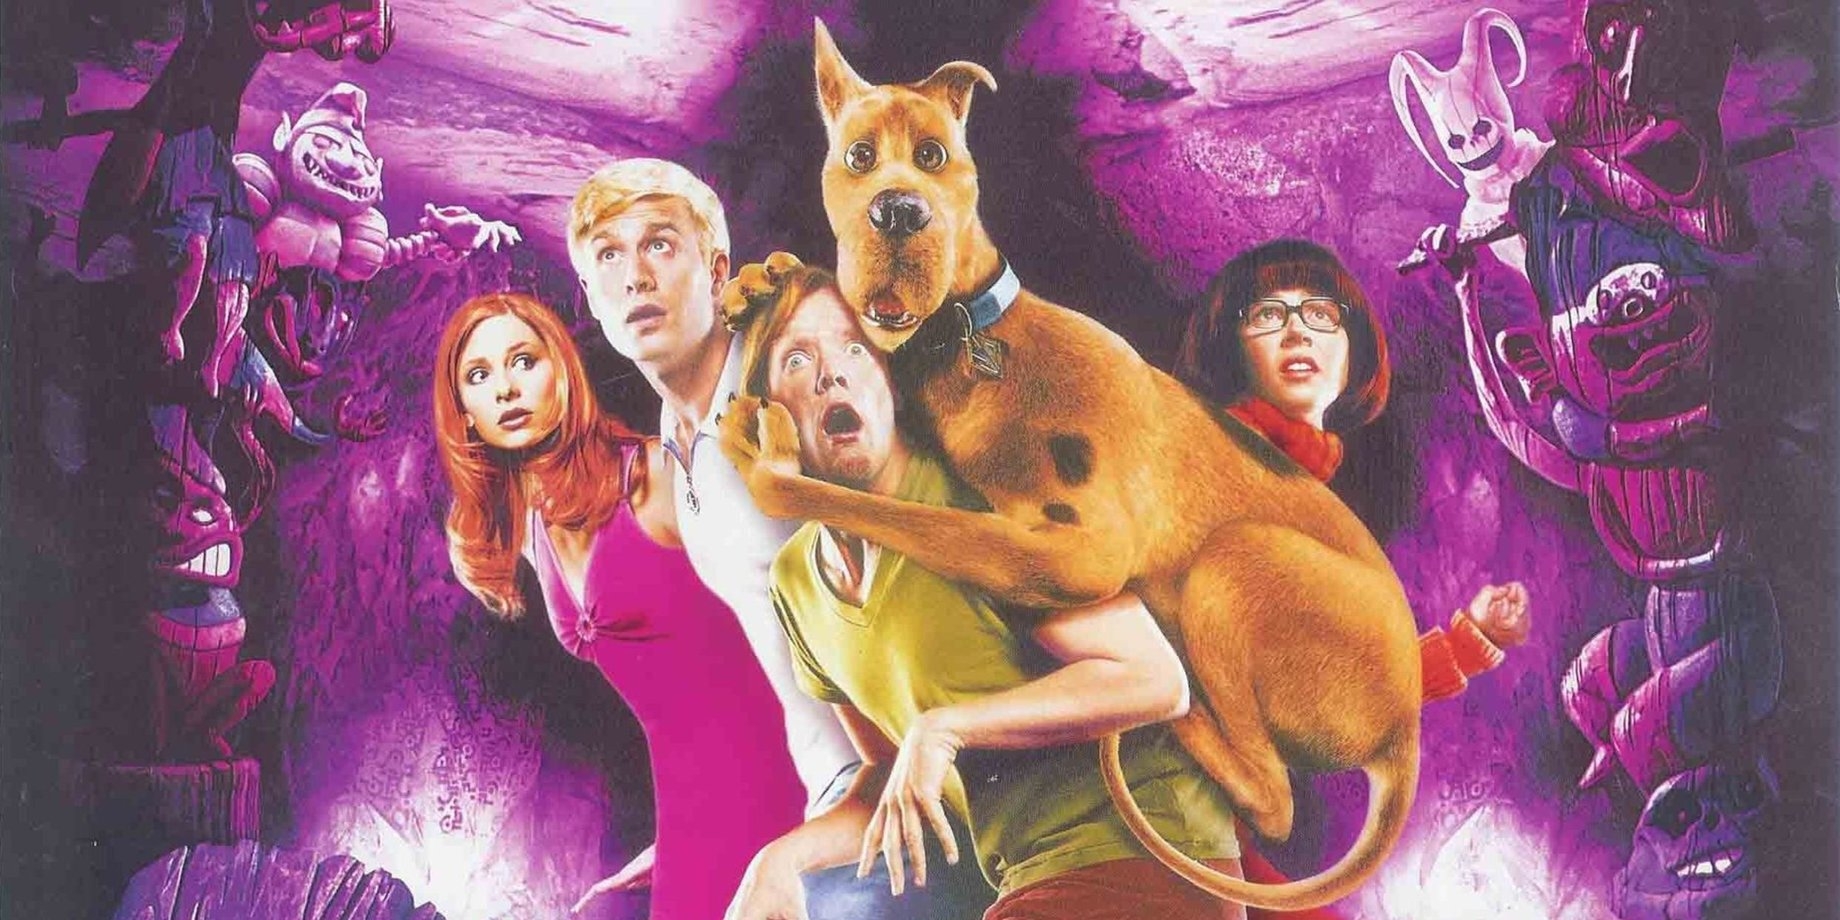 Scooby doo 2002 г. Скуби Ду 1. Скуби Ду 2002.